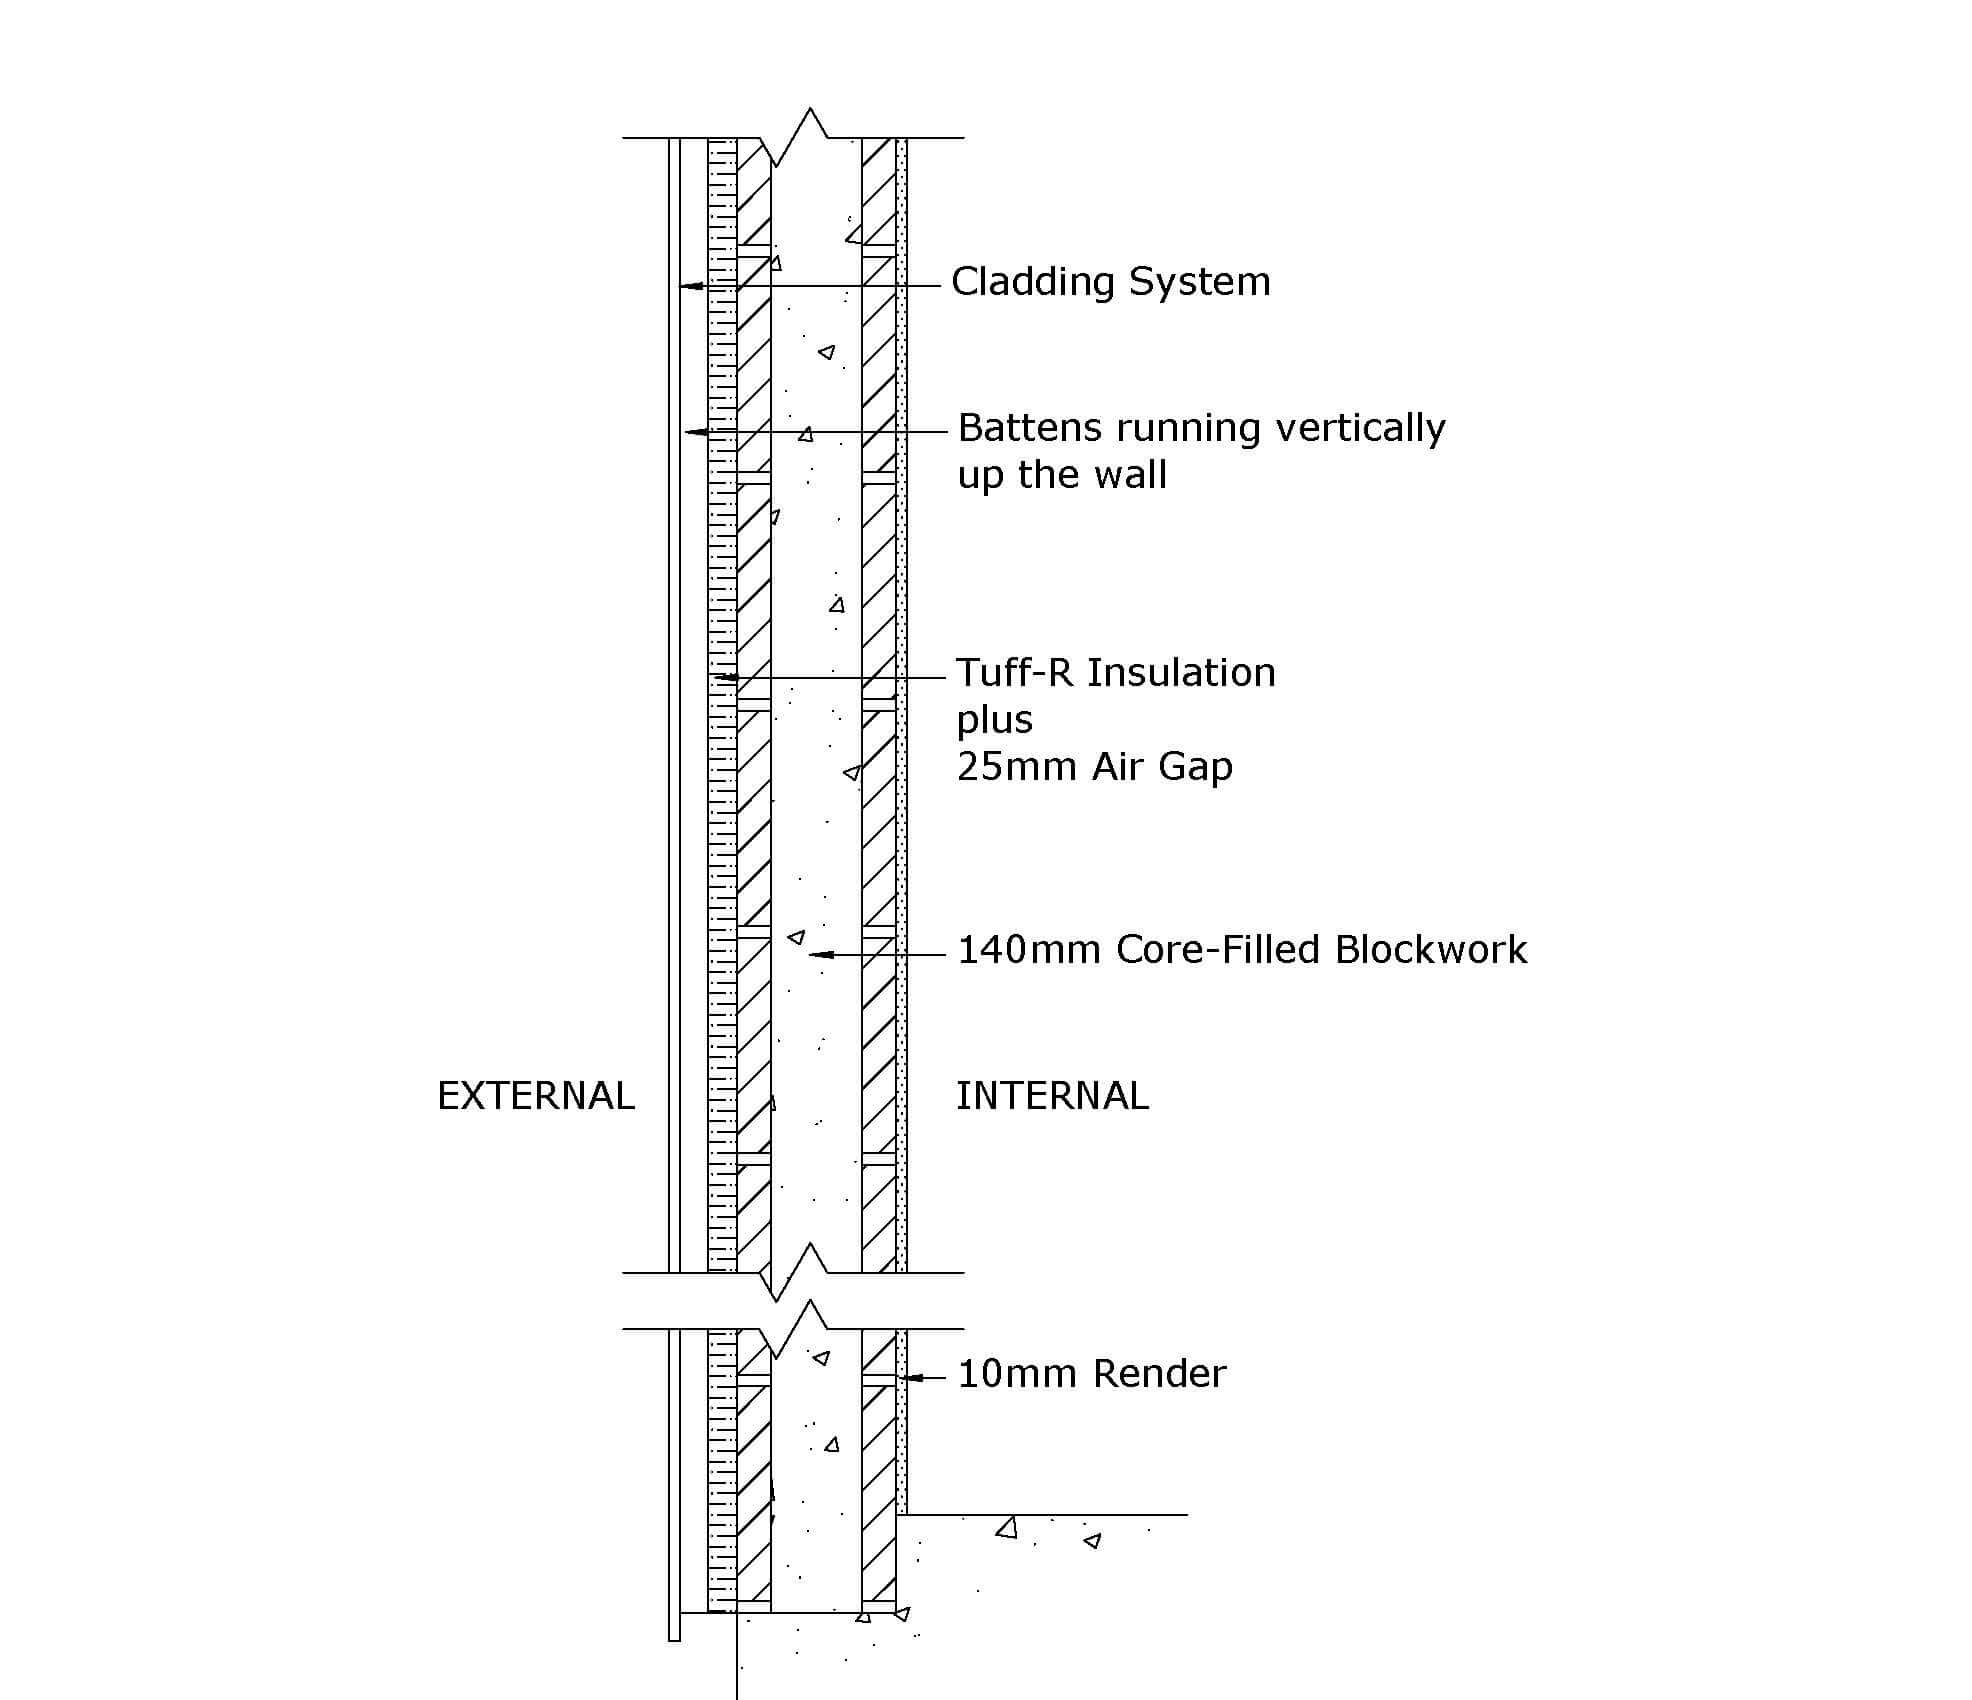 Externally insulated masonry wall - CW006b